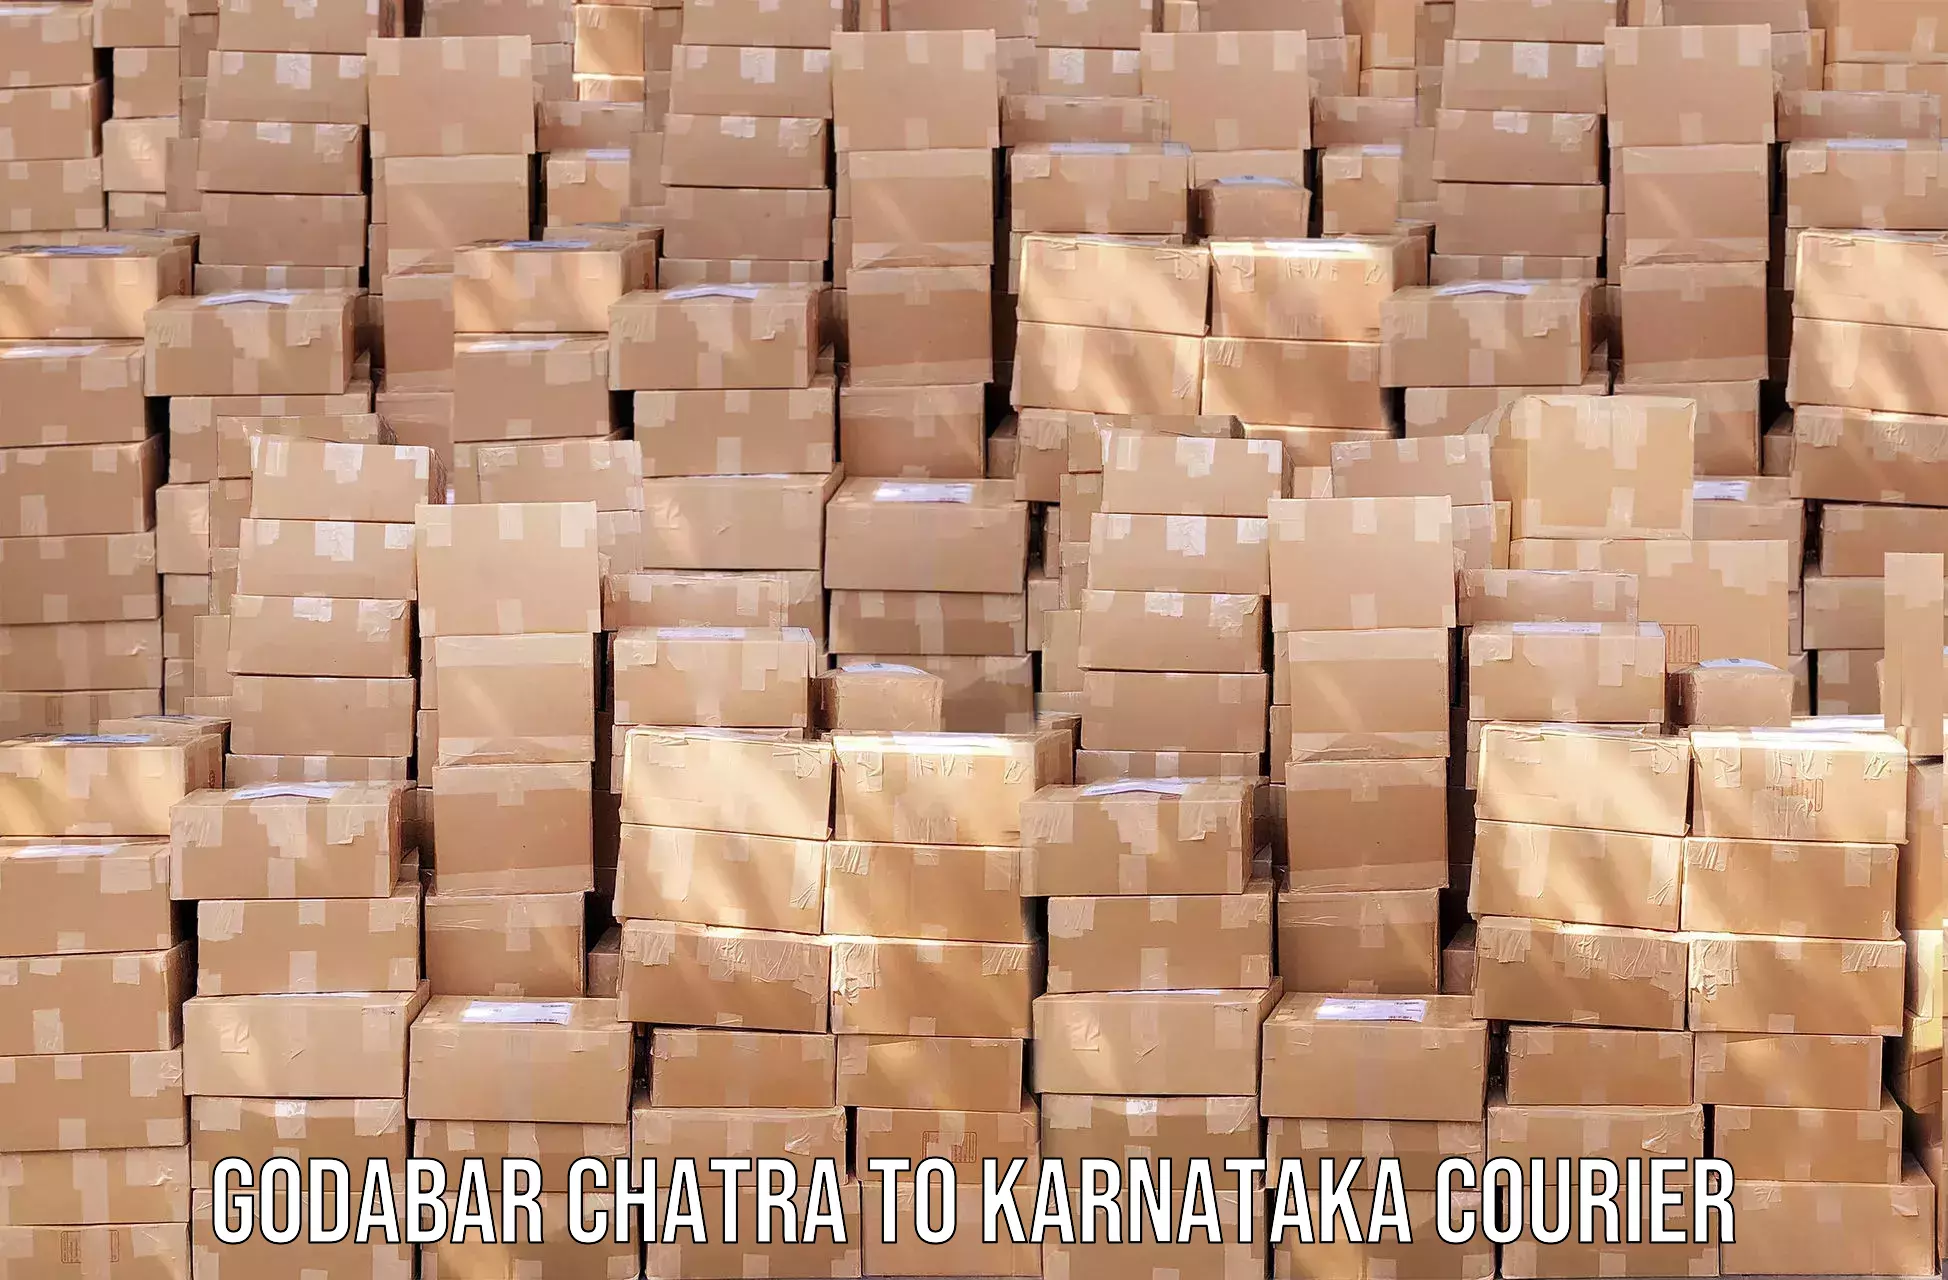 Pharmaceutical courier Godabar Chatra to Assaigoli